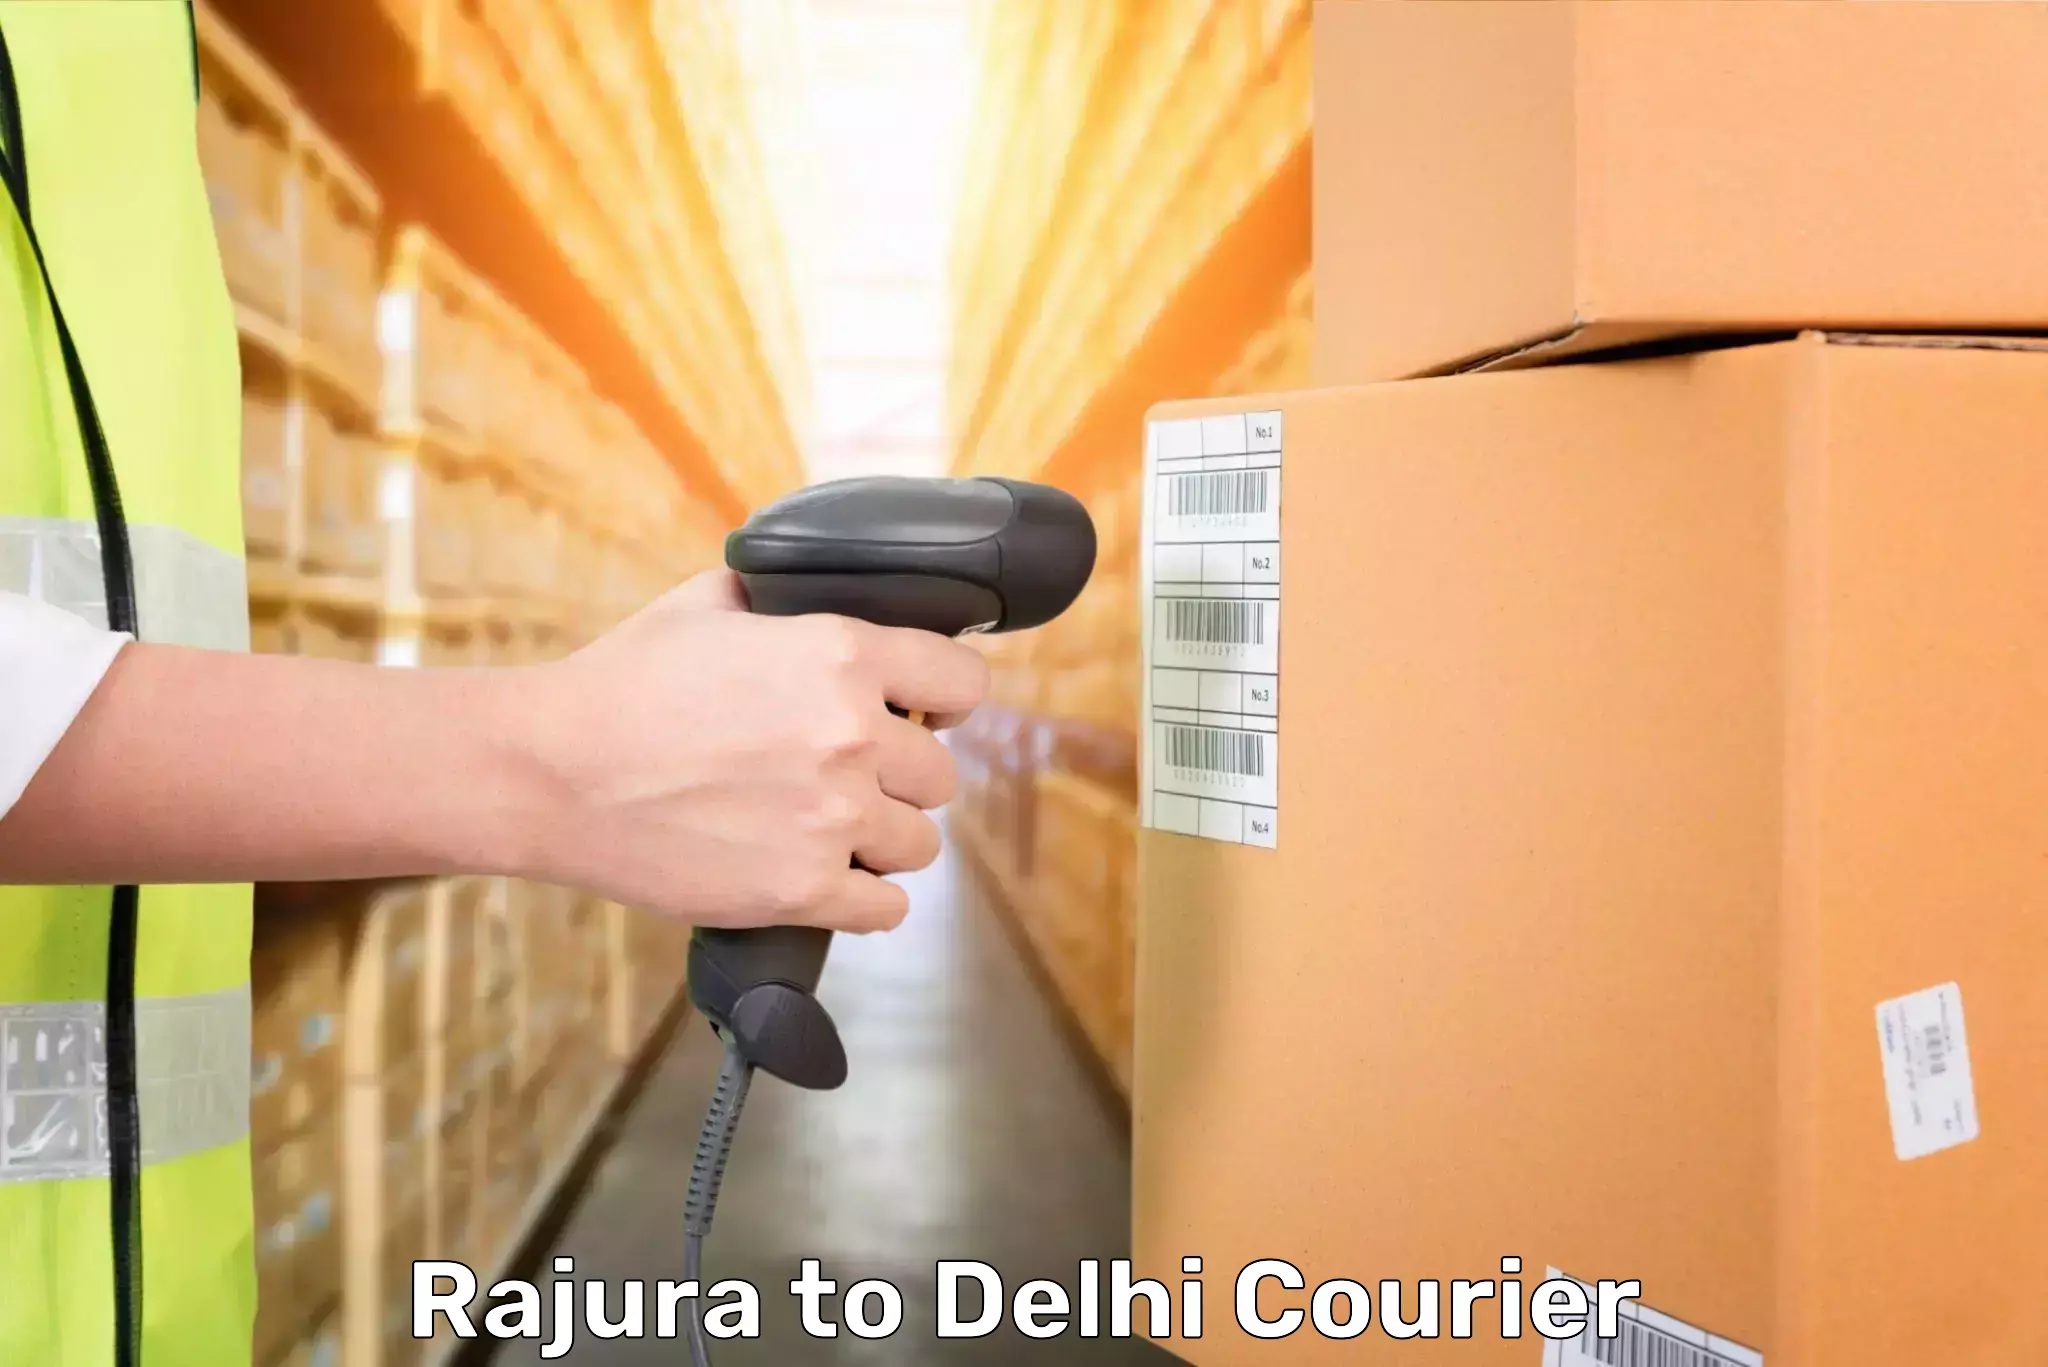 Baggage delivery solutions Rajura to Delhi